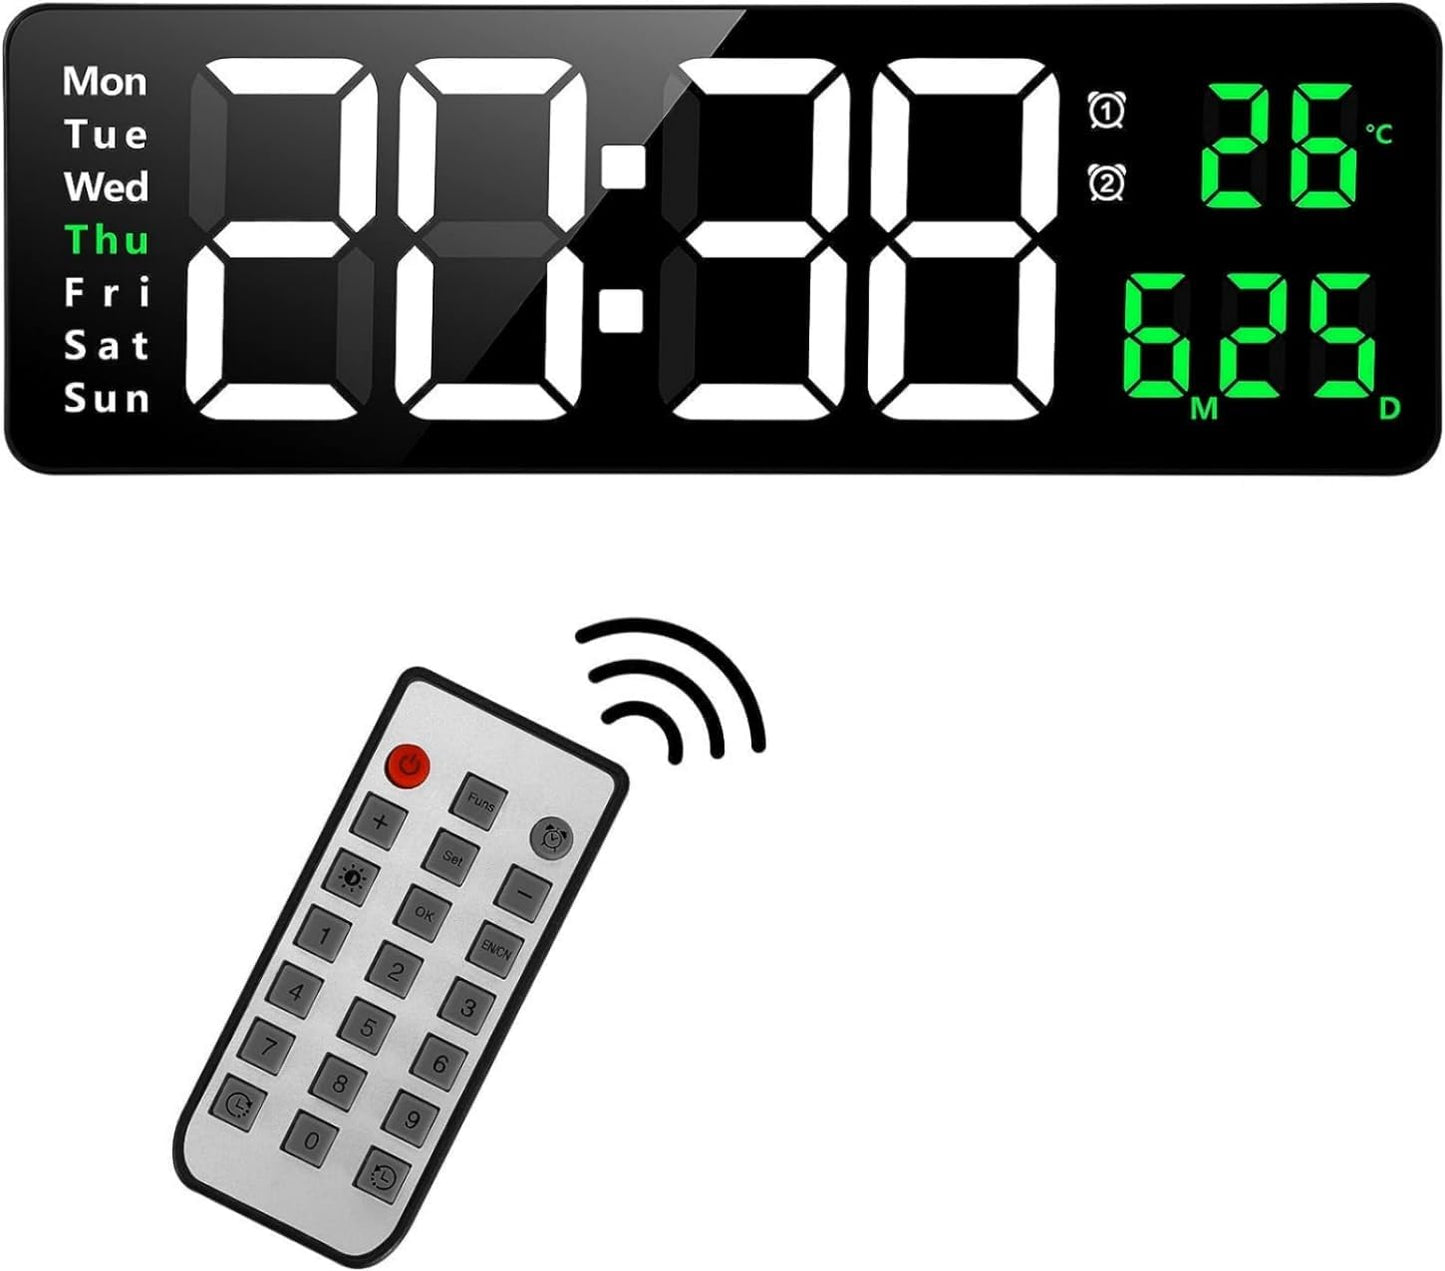 ساعة حائط رقمية من SKY-TOUCH، ساعة منبه رقمية كبيرة الحجم مقاس 16 بوصة مع جهاز تحكم عن بعد، ساعة رقمية LED كبيرة الحجم، سطوع تلقائي باهت، ساعة كبيرة مع التاريخ والأسبوع ودرجة الحرارة 